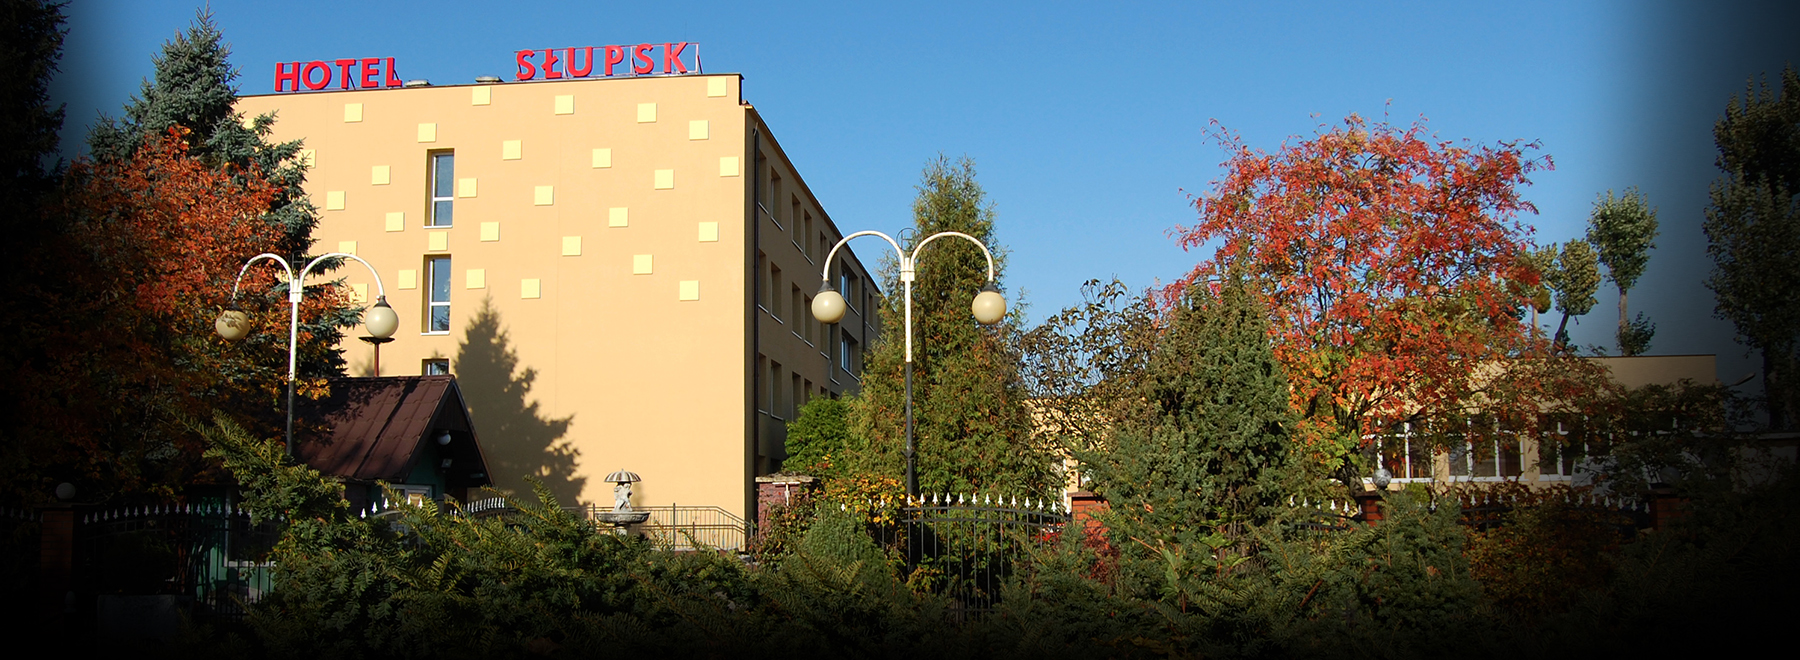 Hotel Słupsk - widok z ulicy